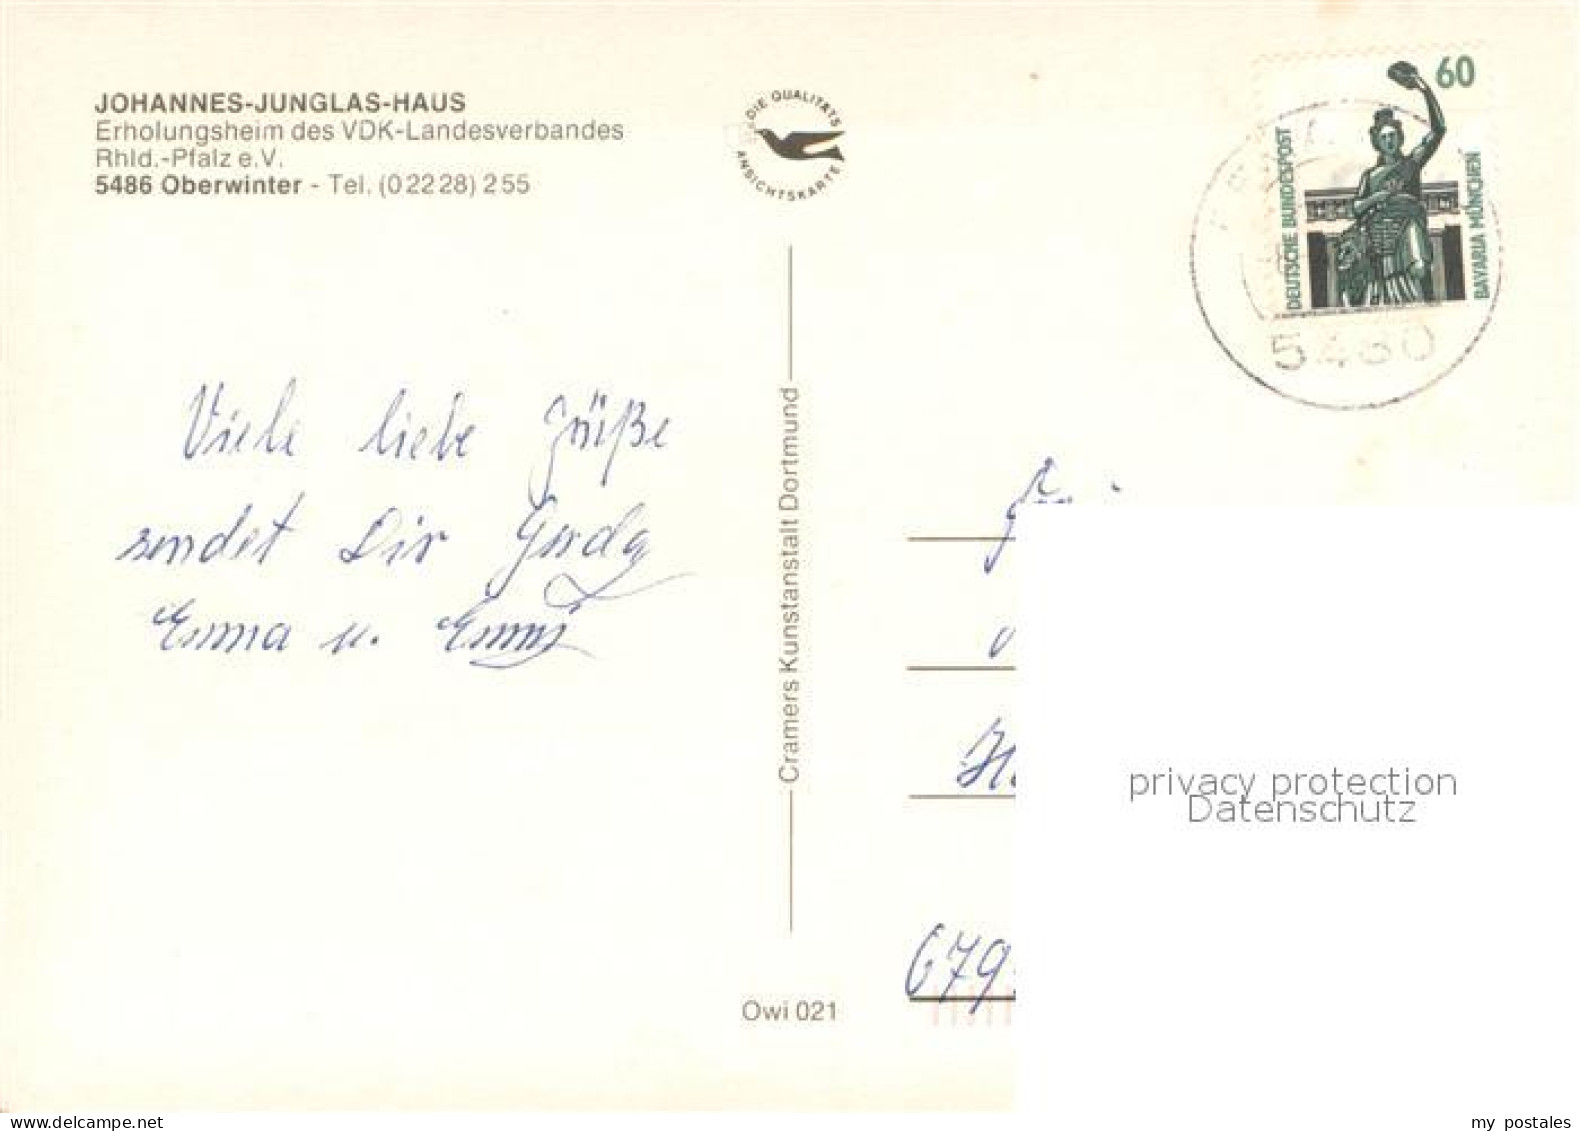 73677852 Oberwinter Rhein Erholungsheim Johannes Junglas Haus Hallenbad Gastraeu - Remagen